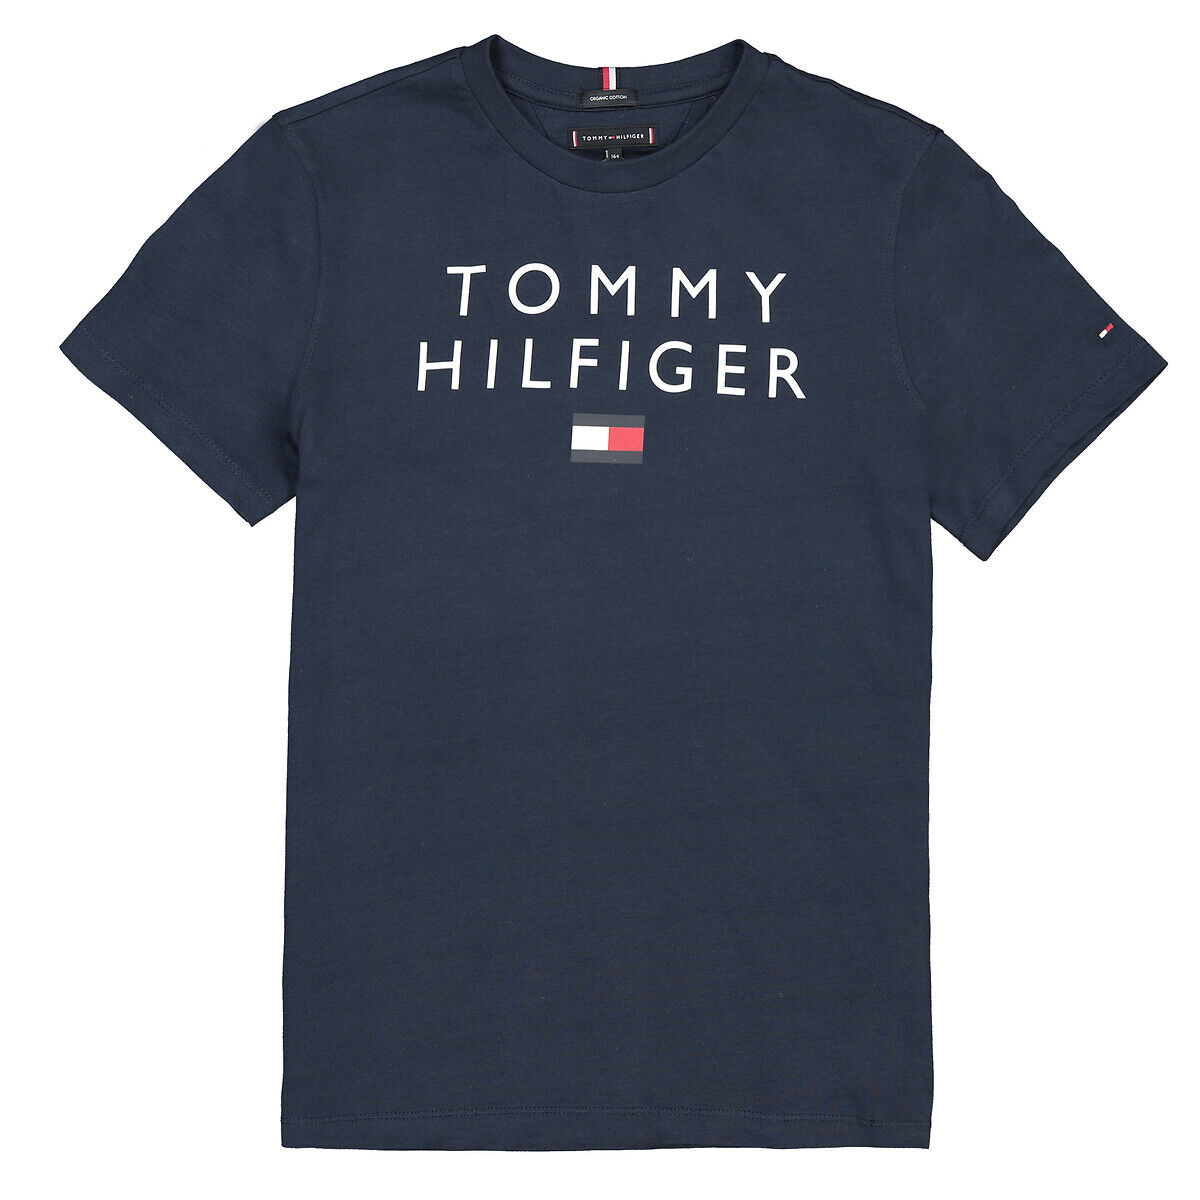 TOMMY HILFIGER T-shirt manches courtes coton bio 10-16 ans